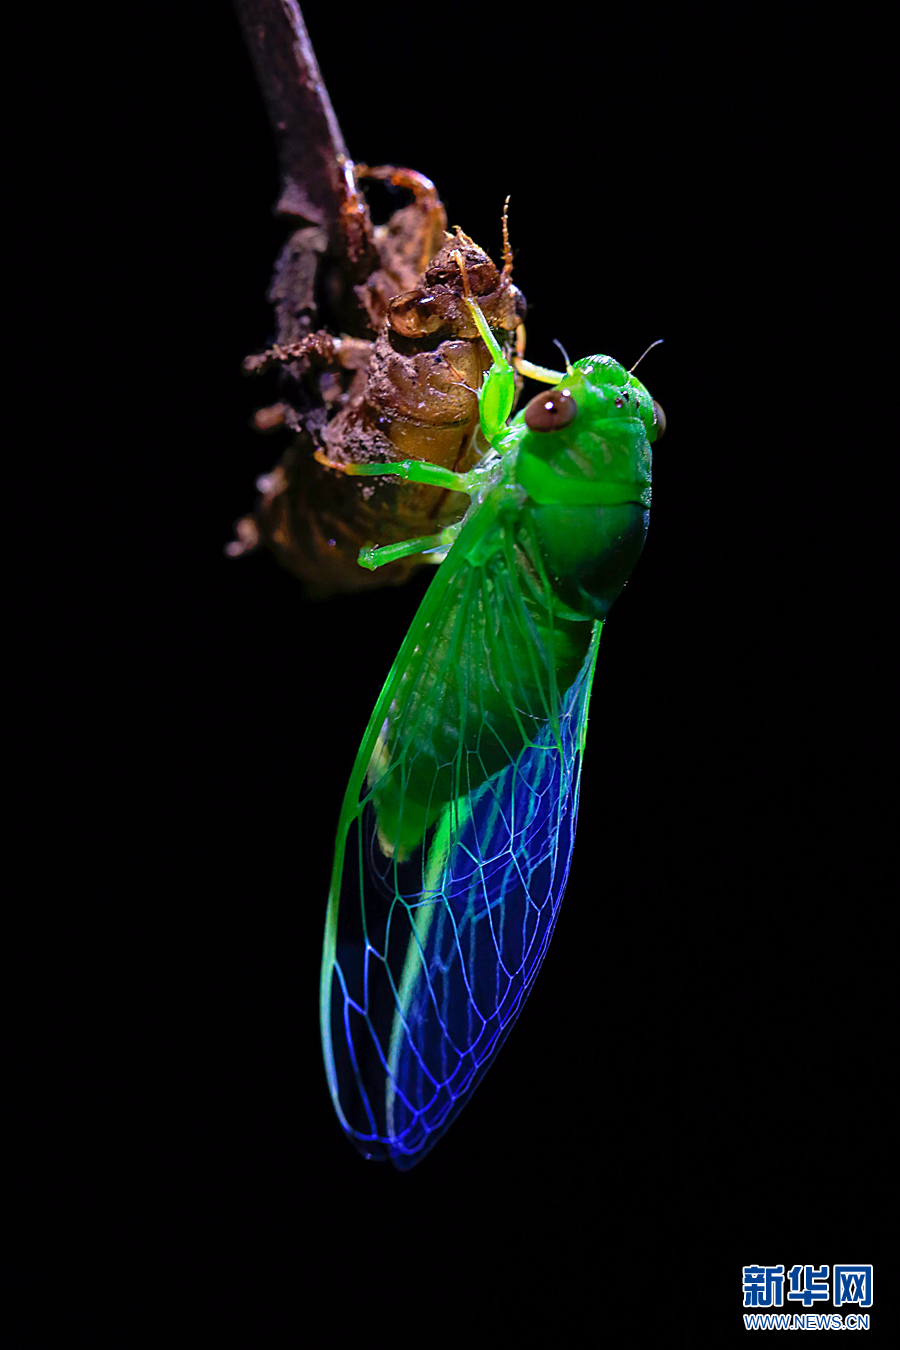 夏至蝉始鸣:图片记录金蝉脱壳全过程